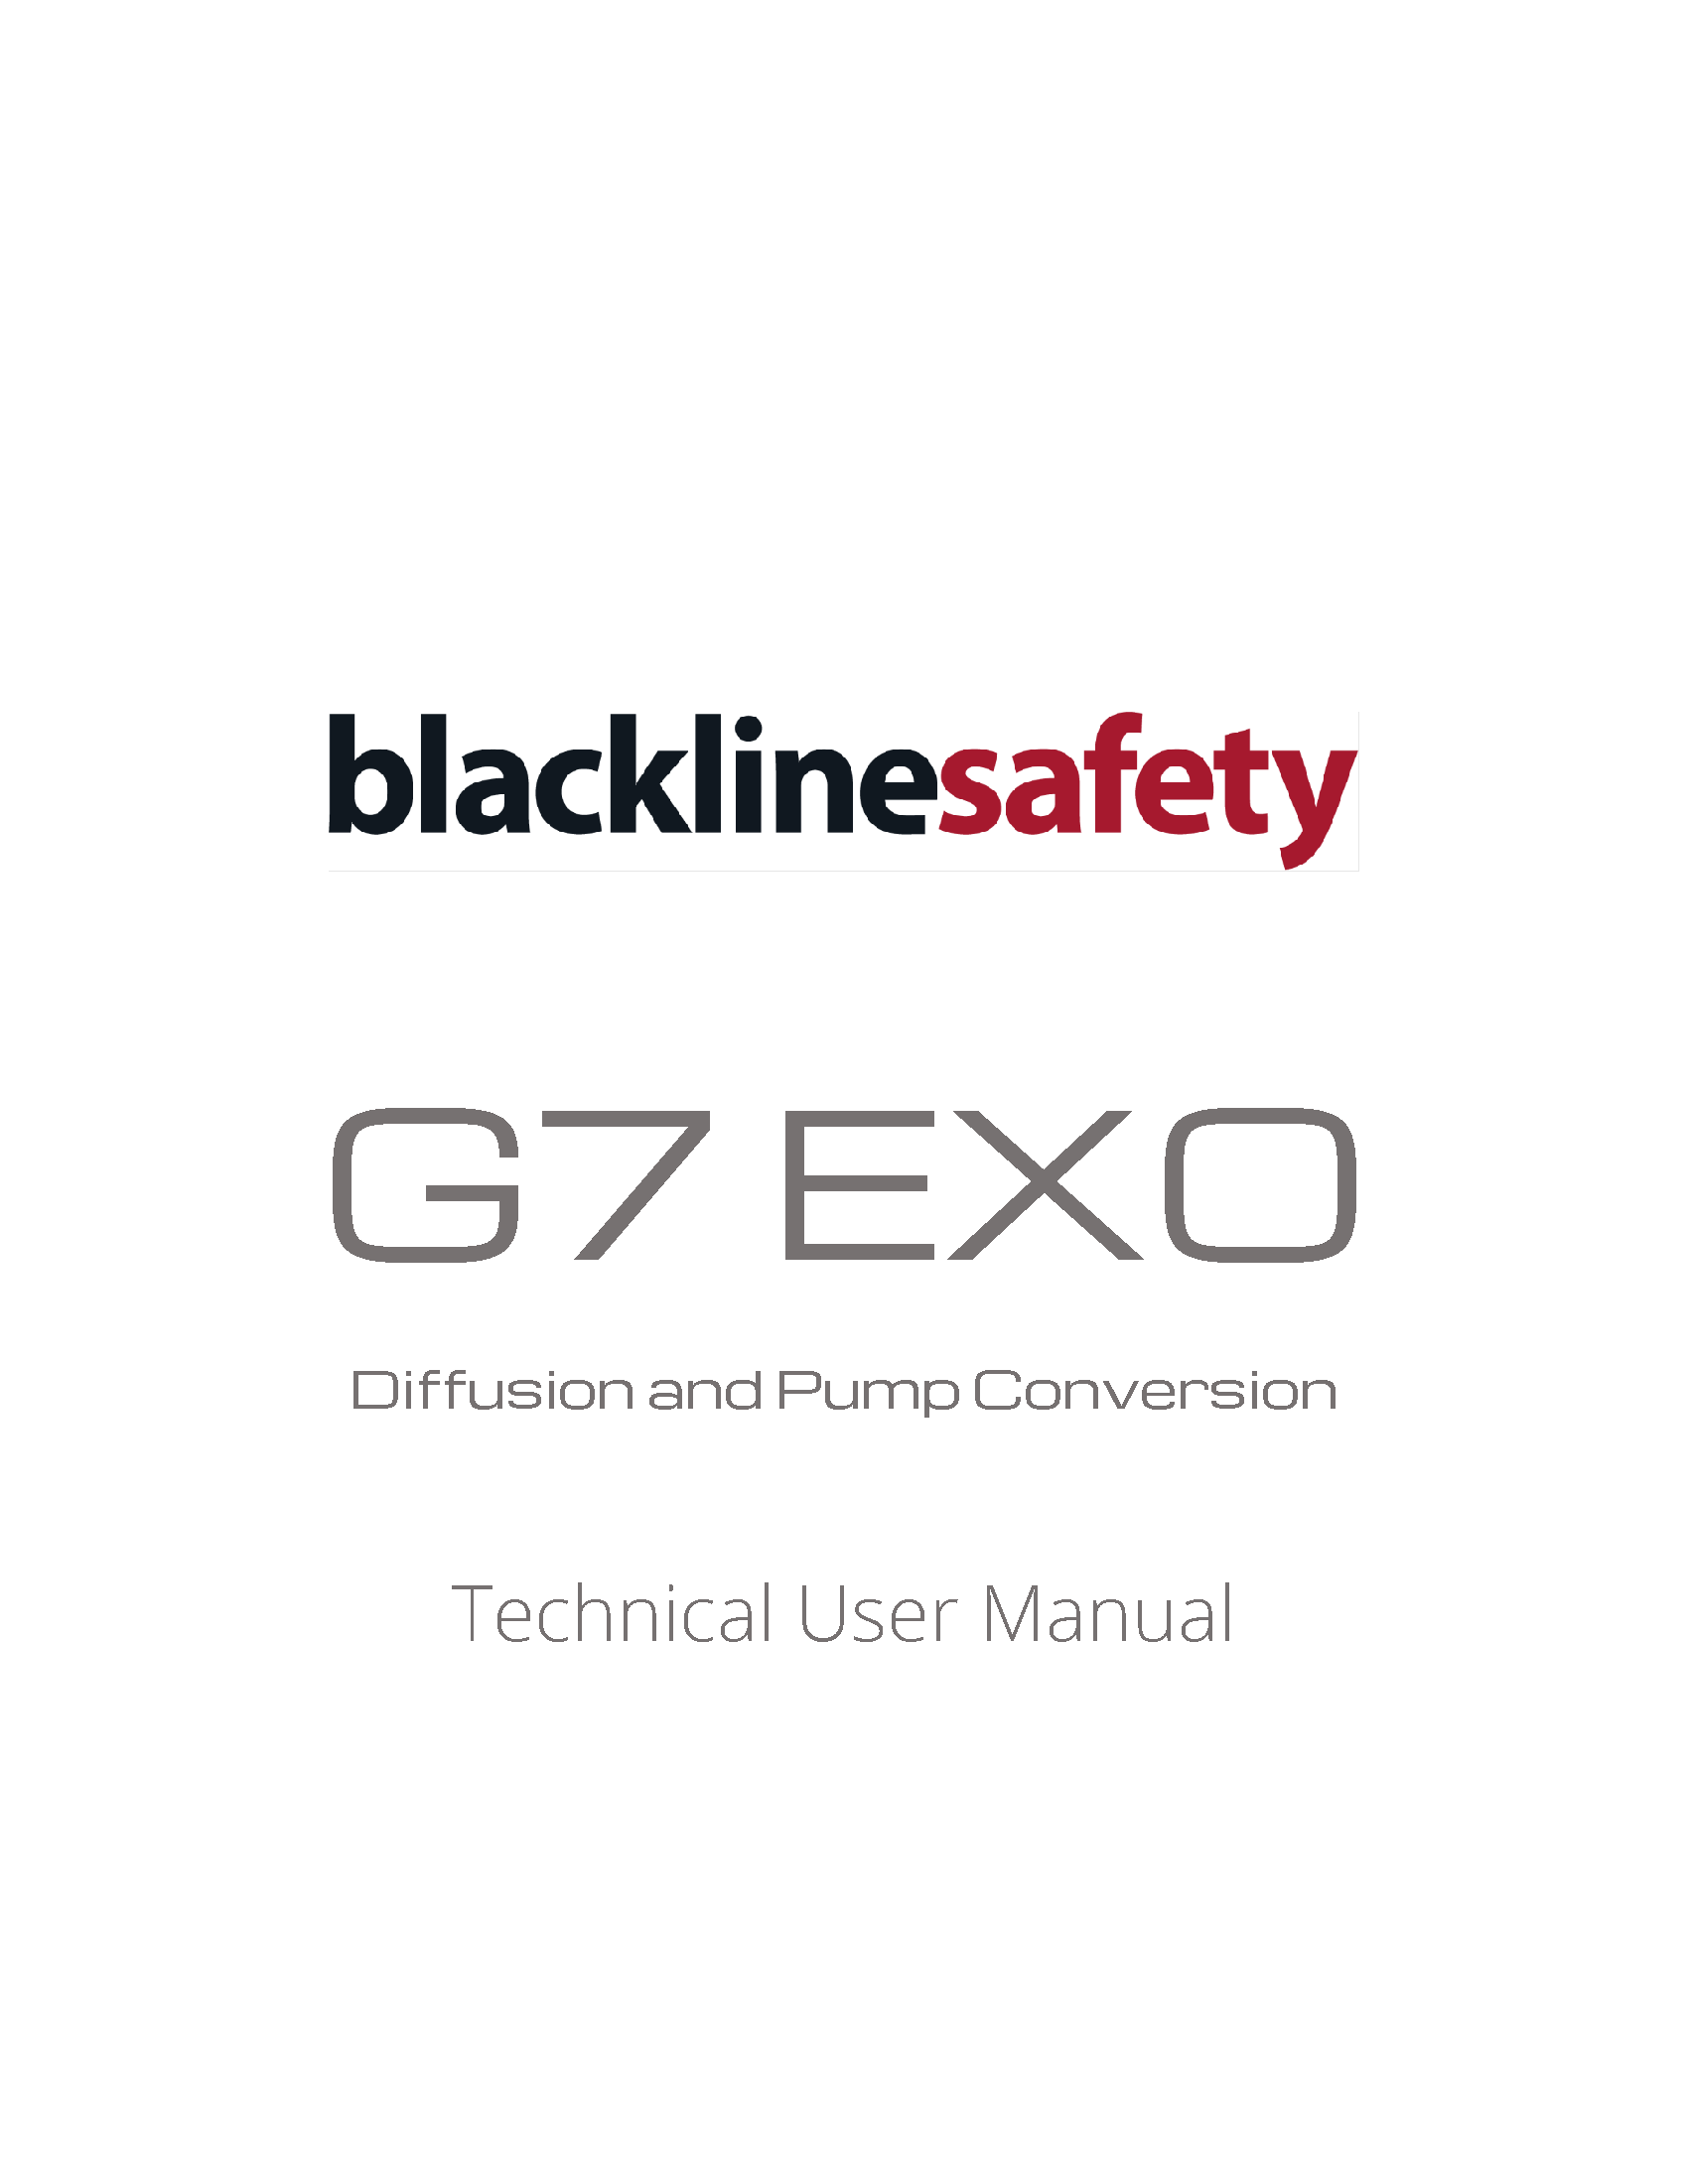 G7 EXO Pomp en Diffusie Conversie Technische Gebruikershandleiding Cover